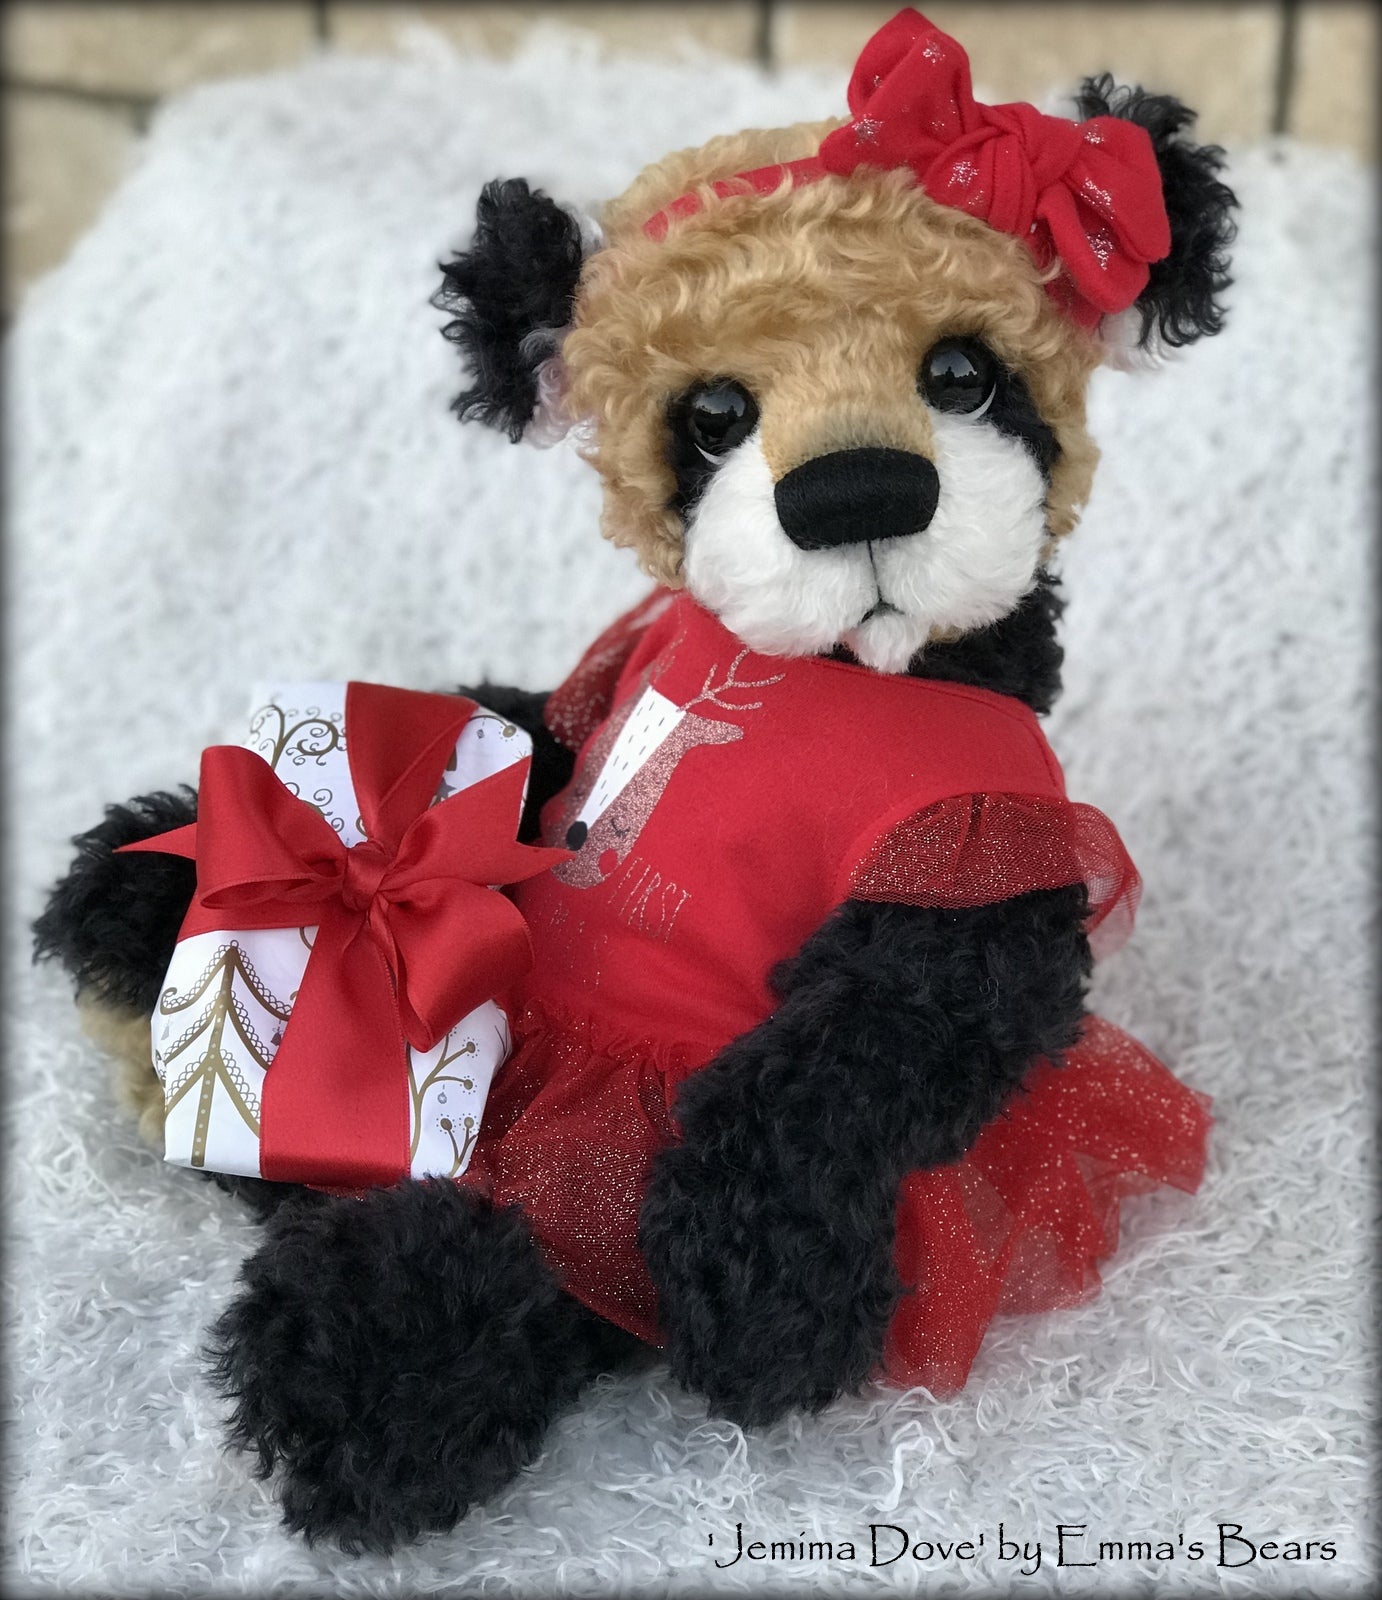 Jemima Dove - 18" Christmas 2018 Toddler Artist Bear by Emma's Bears - OOAK